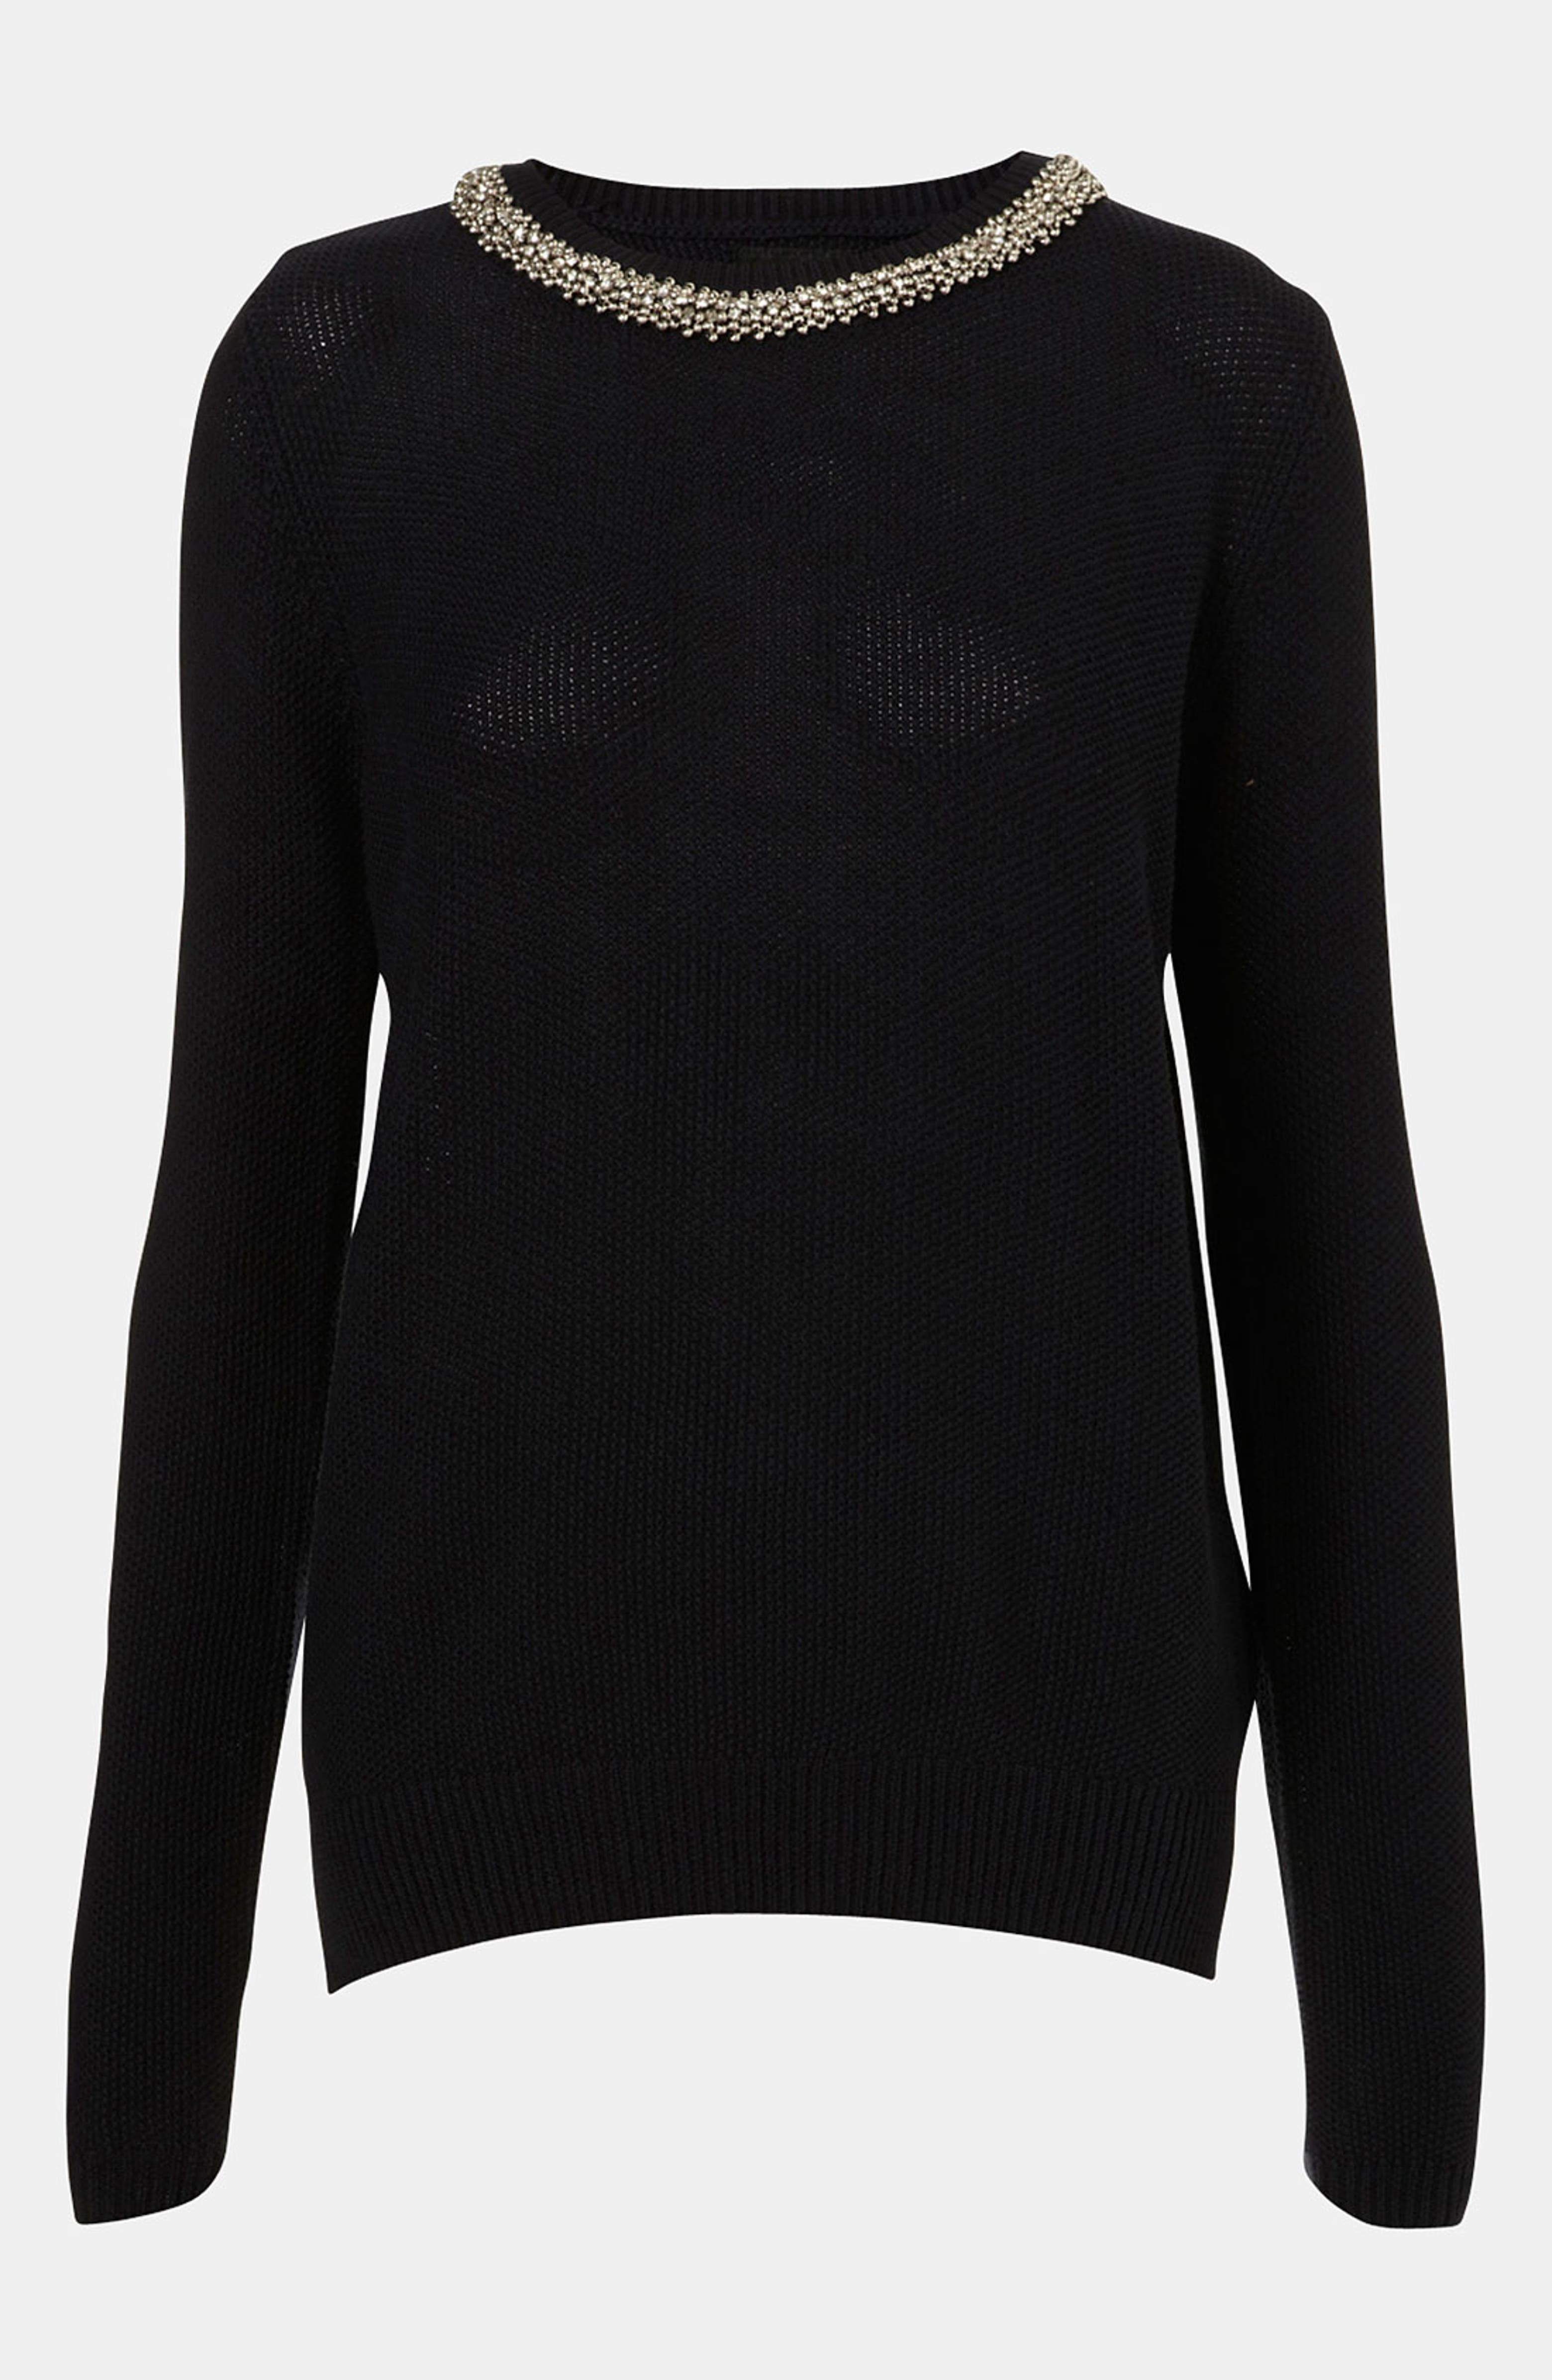 Topshop Embellished Collar Sweater | Nordstrom